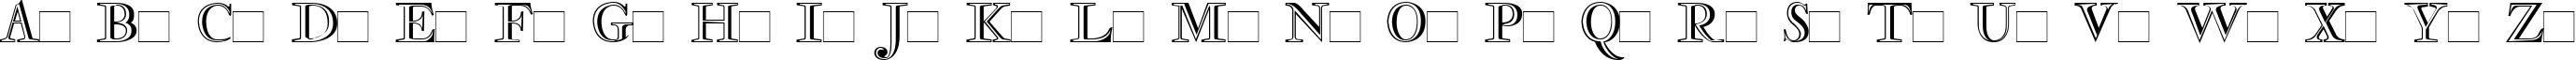 Пример написания английского алфавита шрифтом Rosart